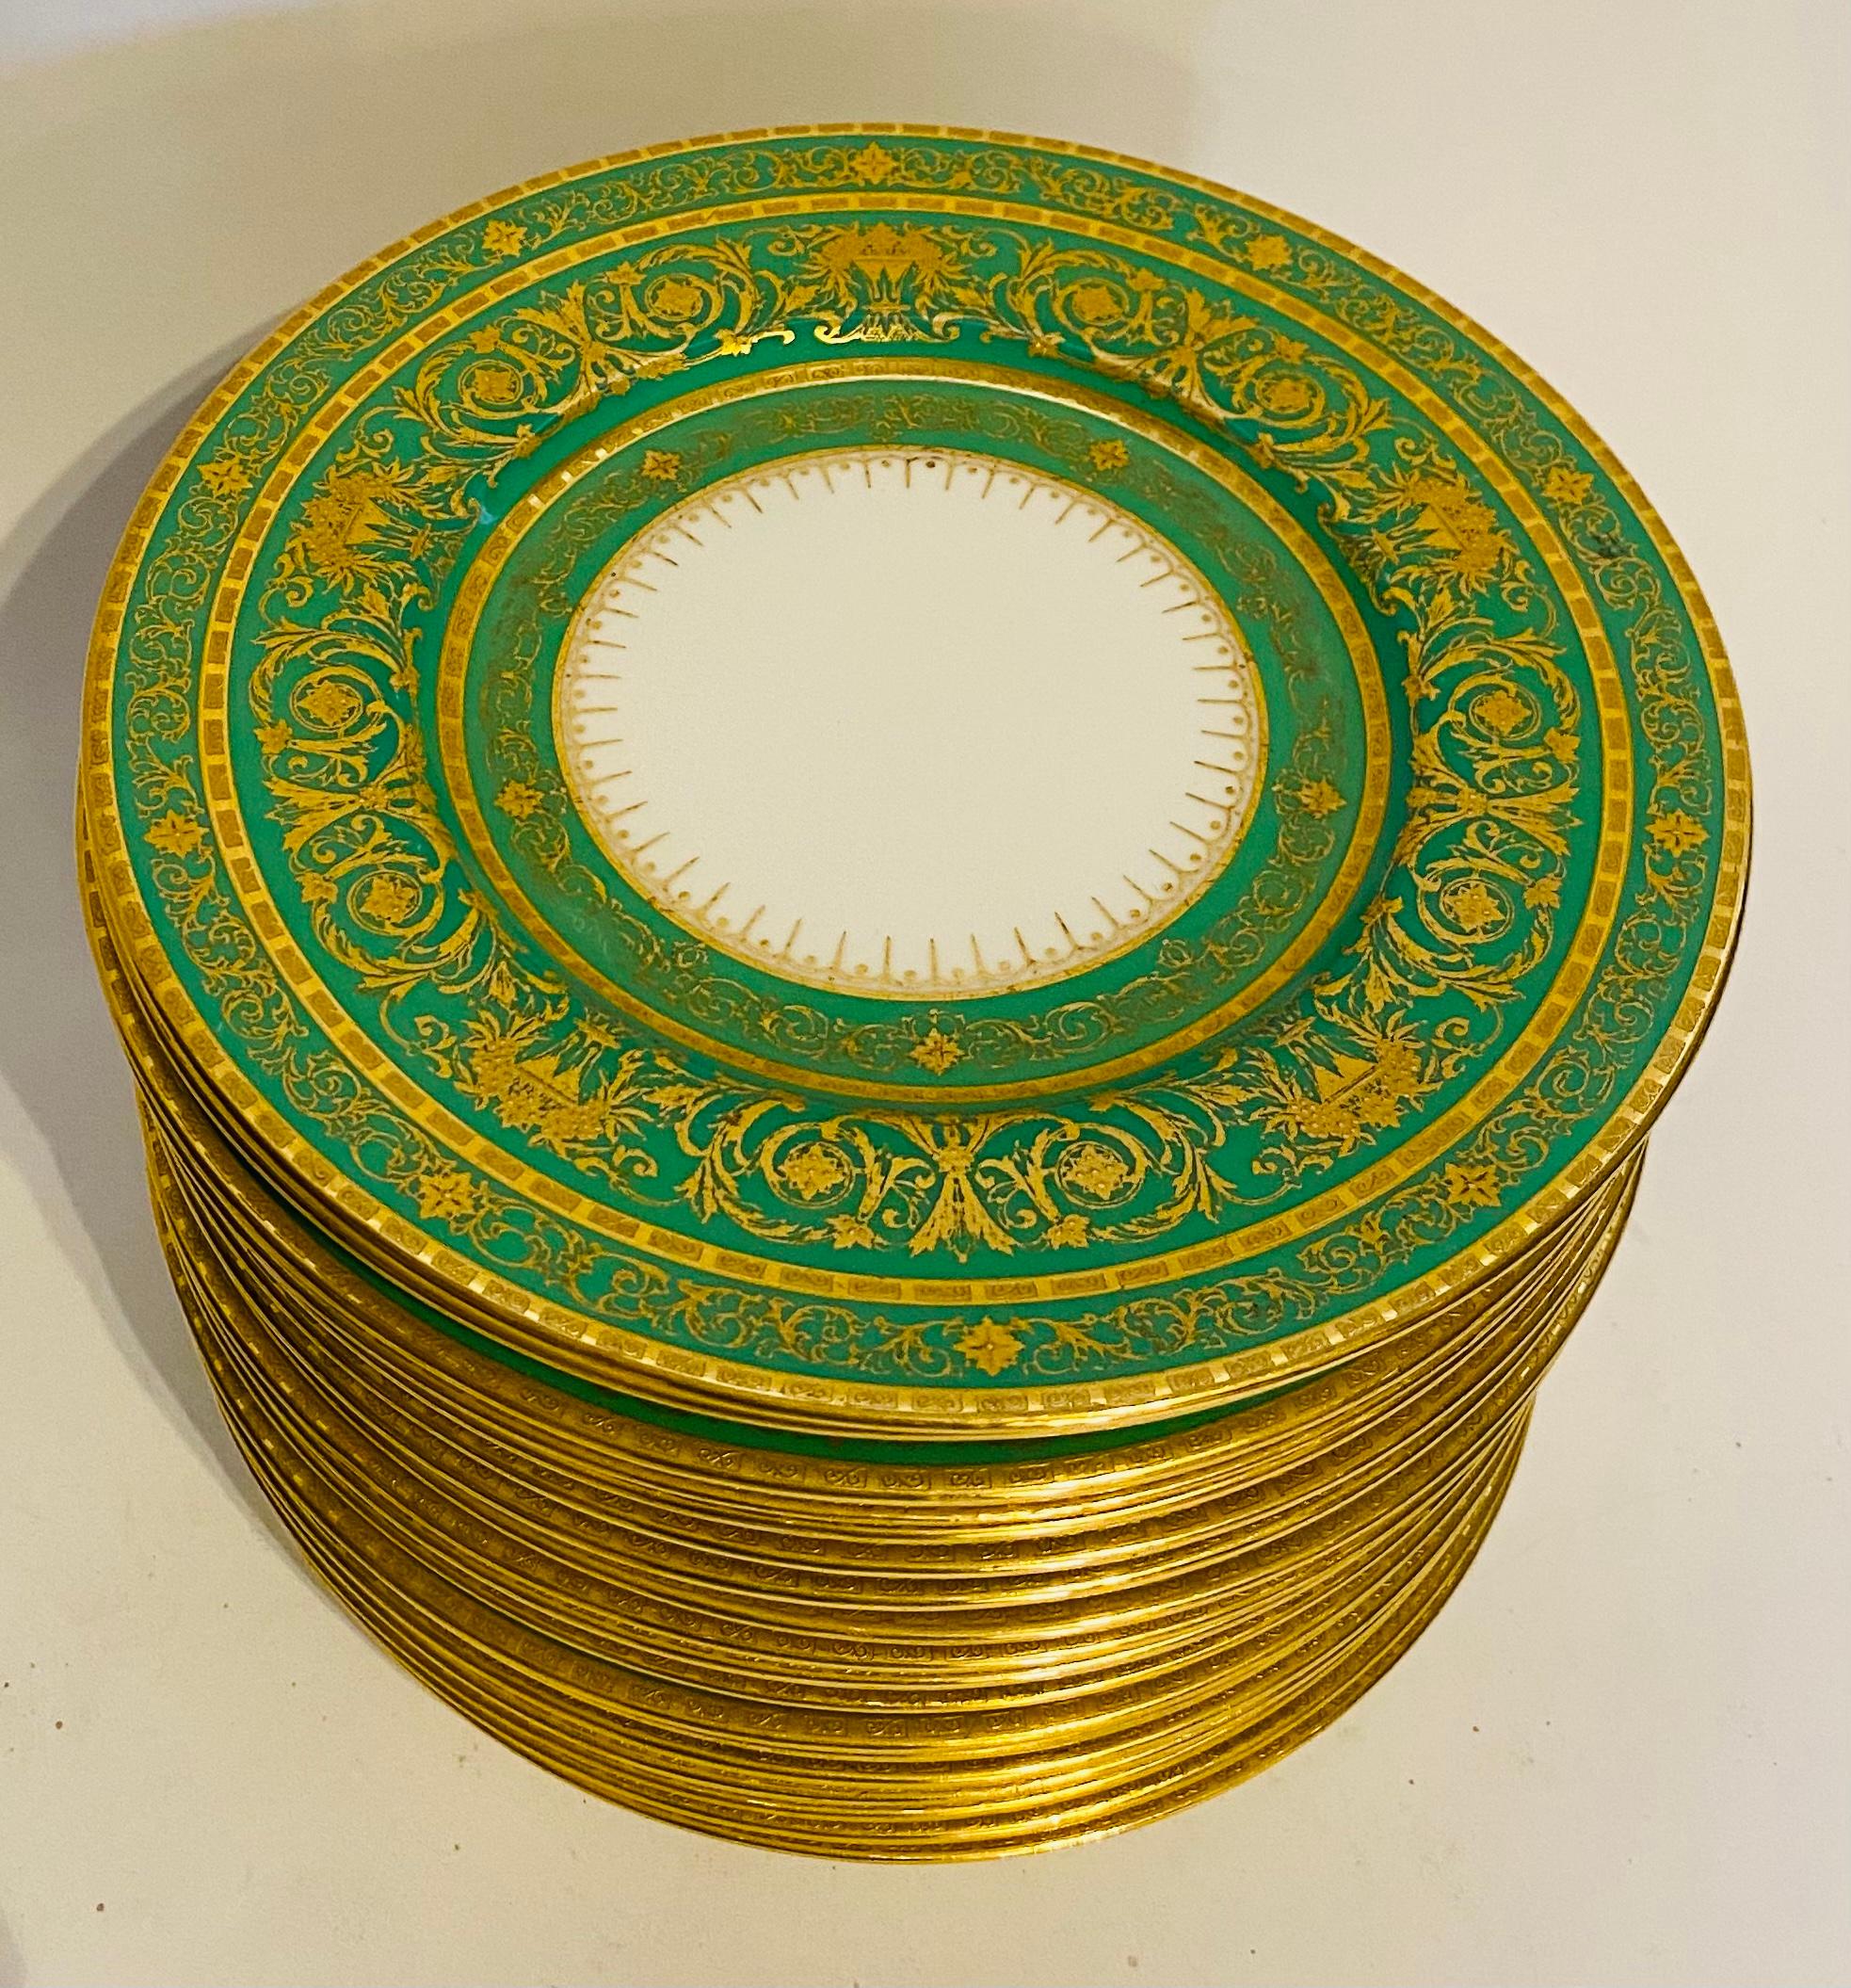 Ein lebhaftes und elegantes Set von Tellern der bekannten Porzellanfirma Minton England aus dem Goldenen Zeitalter. Dieses Set wurde über den Einzelhändler D.B. King in Detroit bestellt, der um die Jahrhundertwende für seine üppigen und hochwertigen